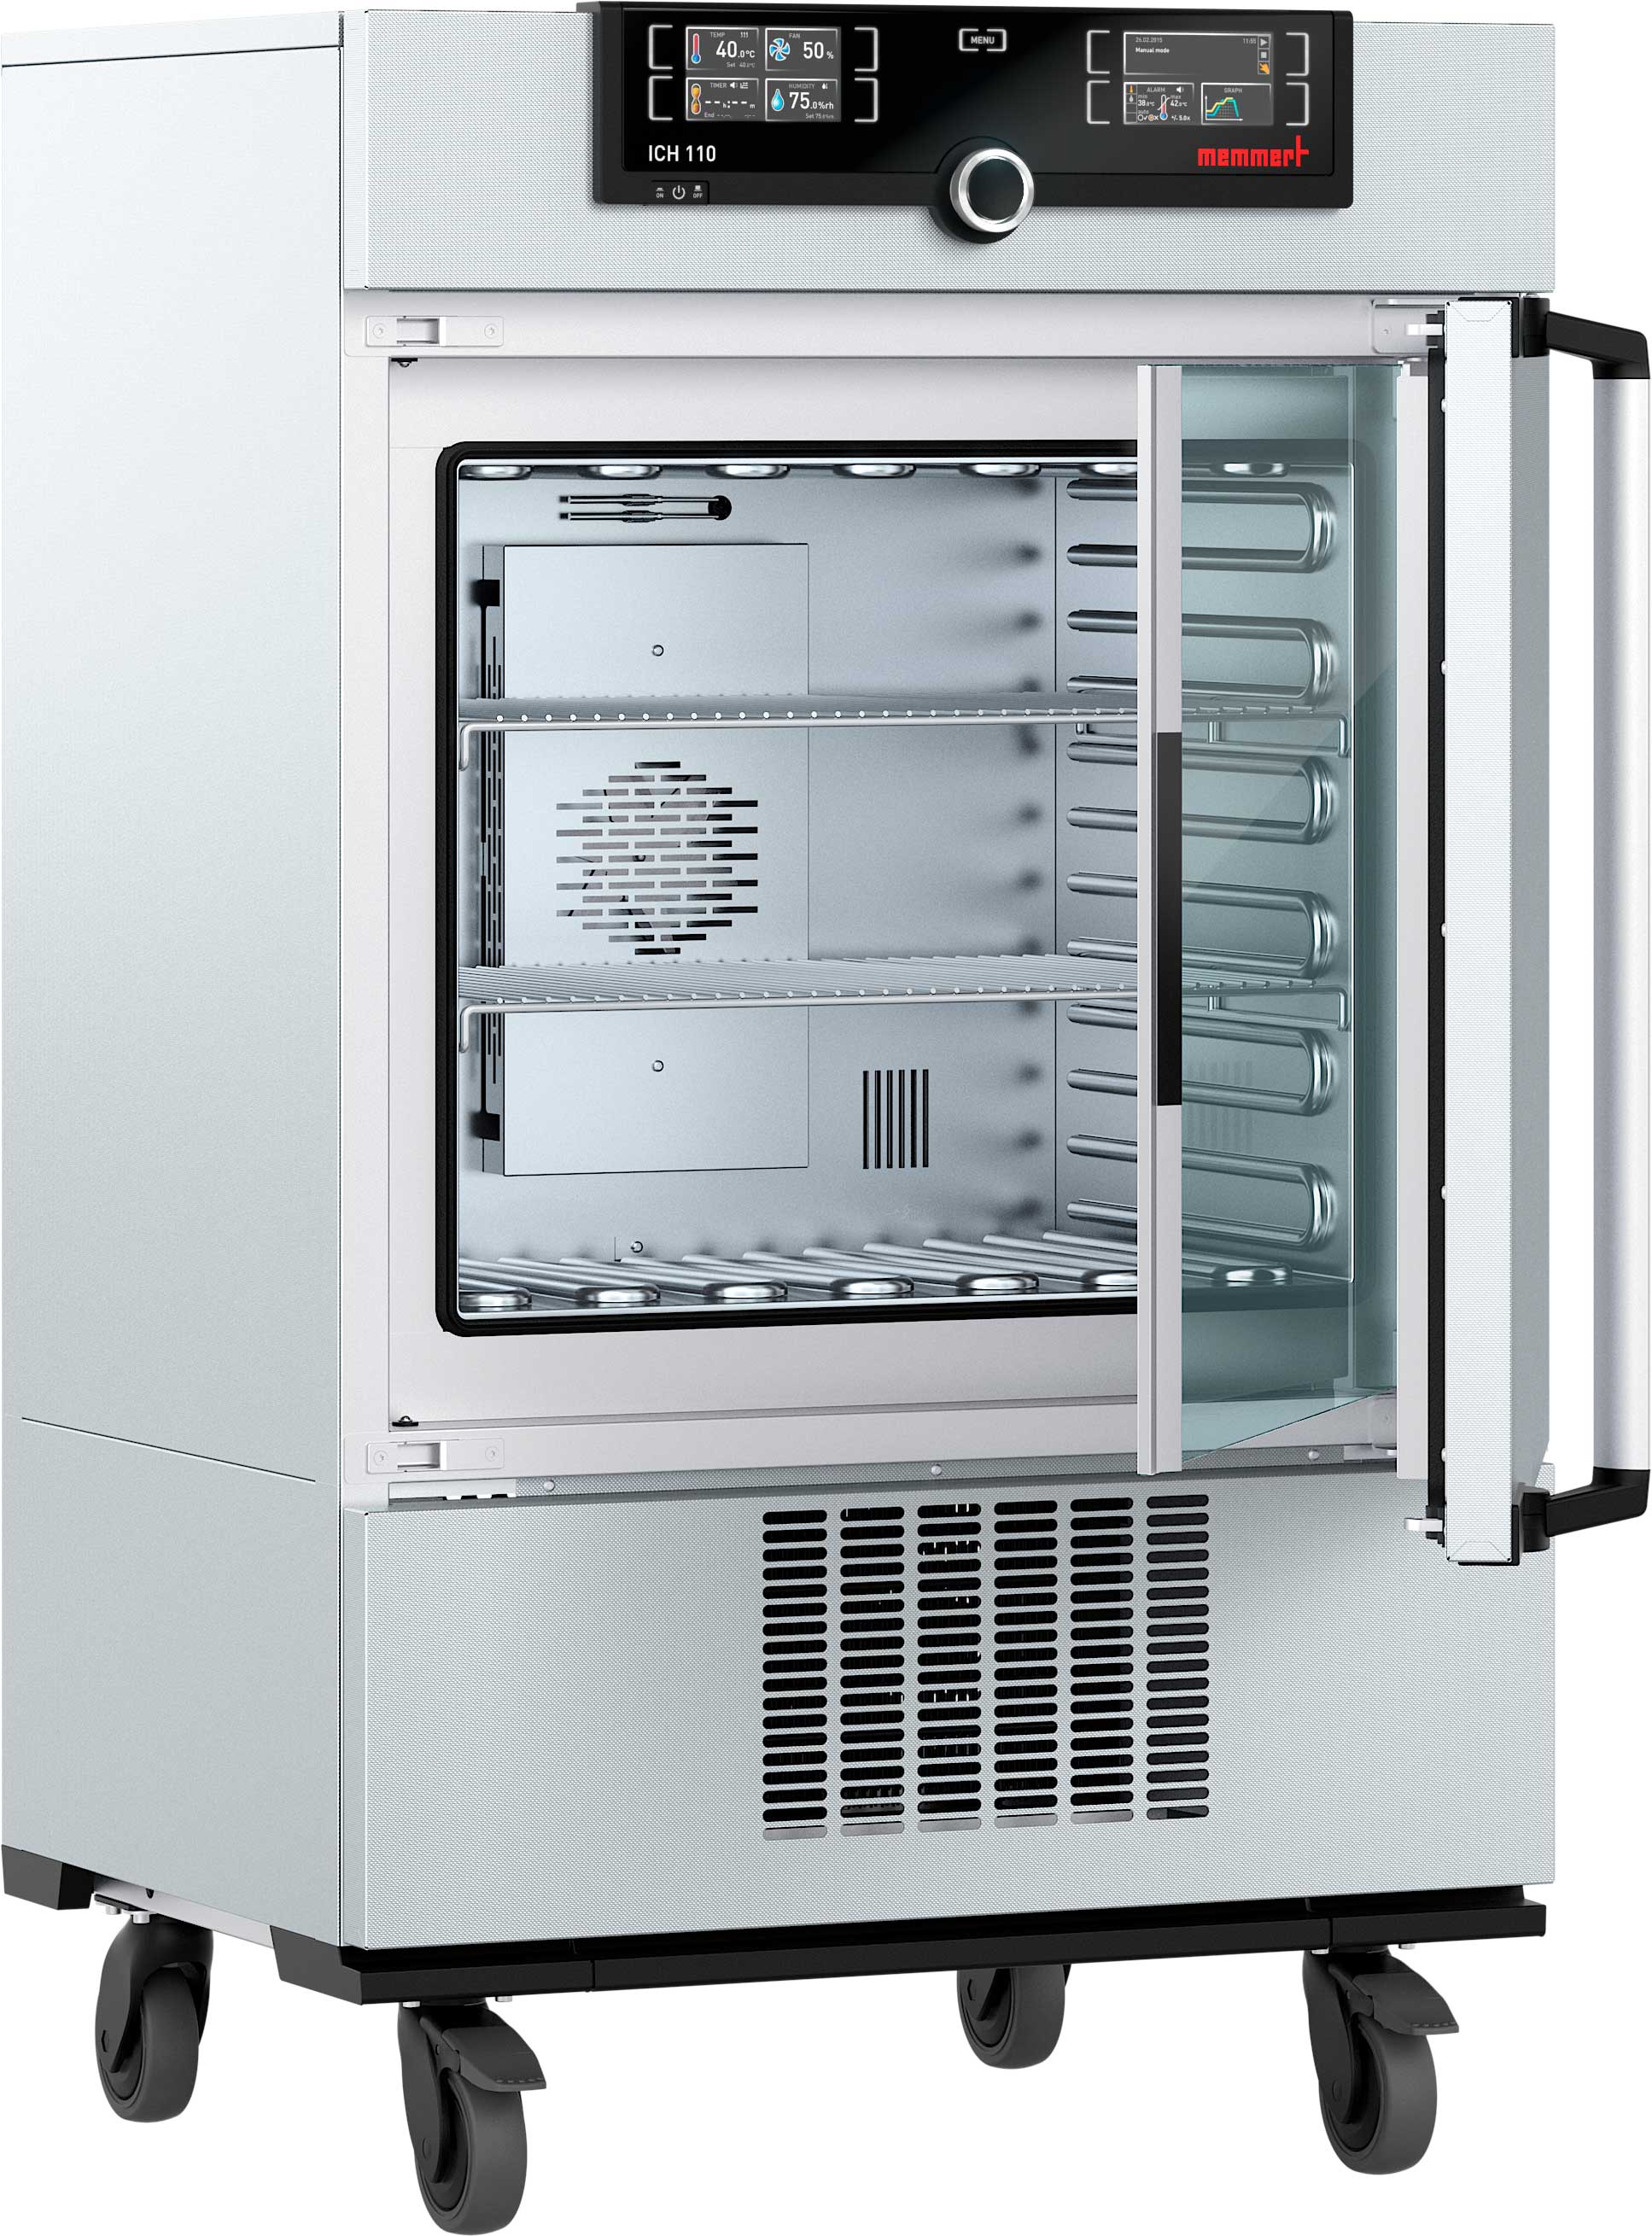 Incubador refrigerado por compresor ICP110, TwinDISPLAY, 108 l, -12 °C a +60 °C con 2 rejillas en acero inoxidable, electropulidas. MEMMERT.